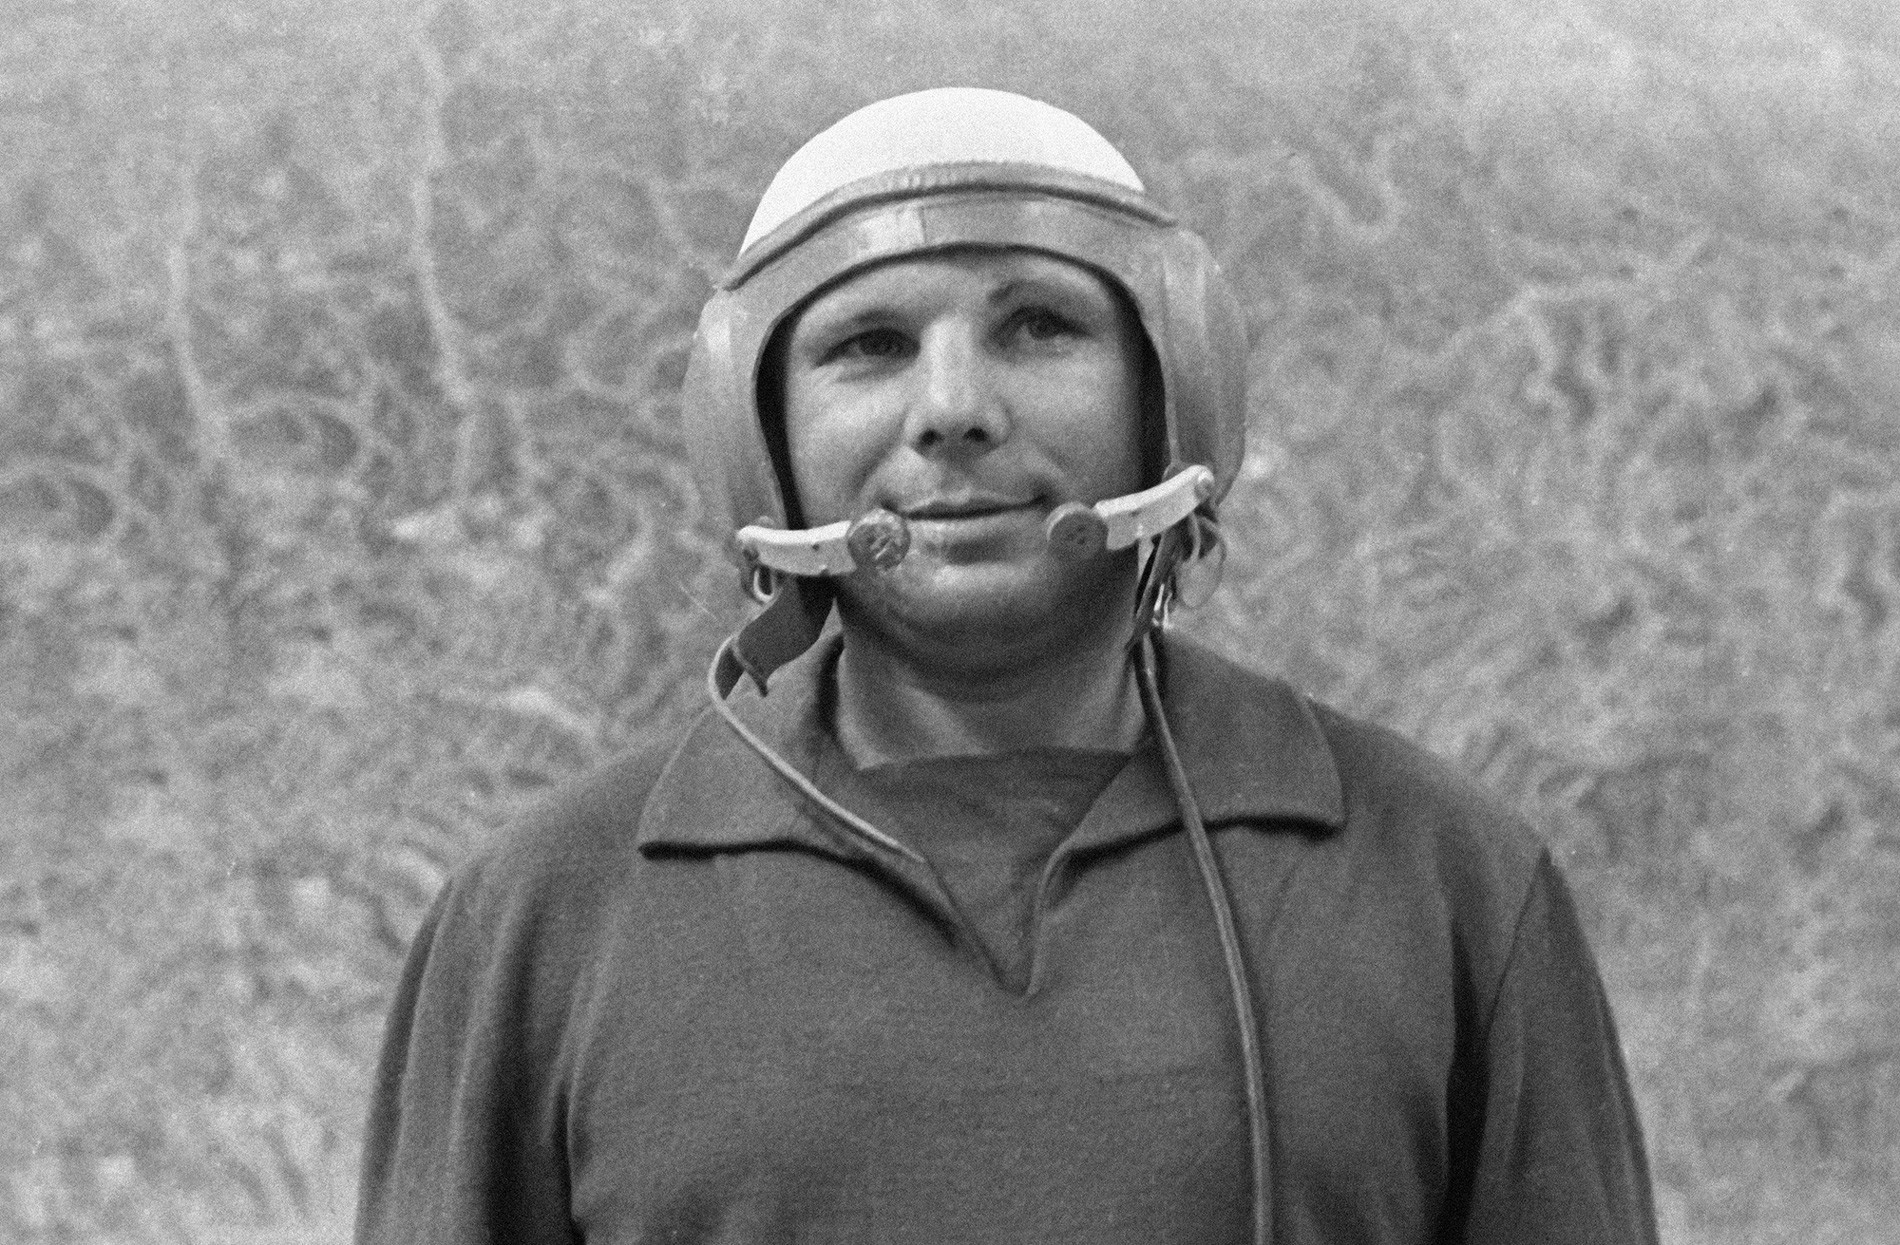 Gagarin dipersiapkan untuk misi ruang angkasa selanjutnya, tetapi tewas dalam latihan terbang rutin.